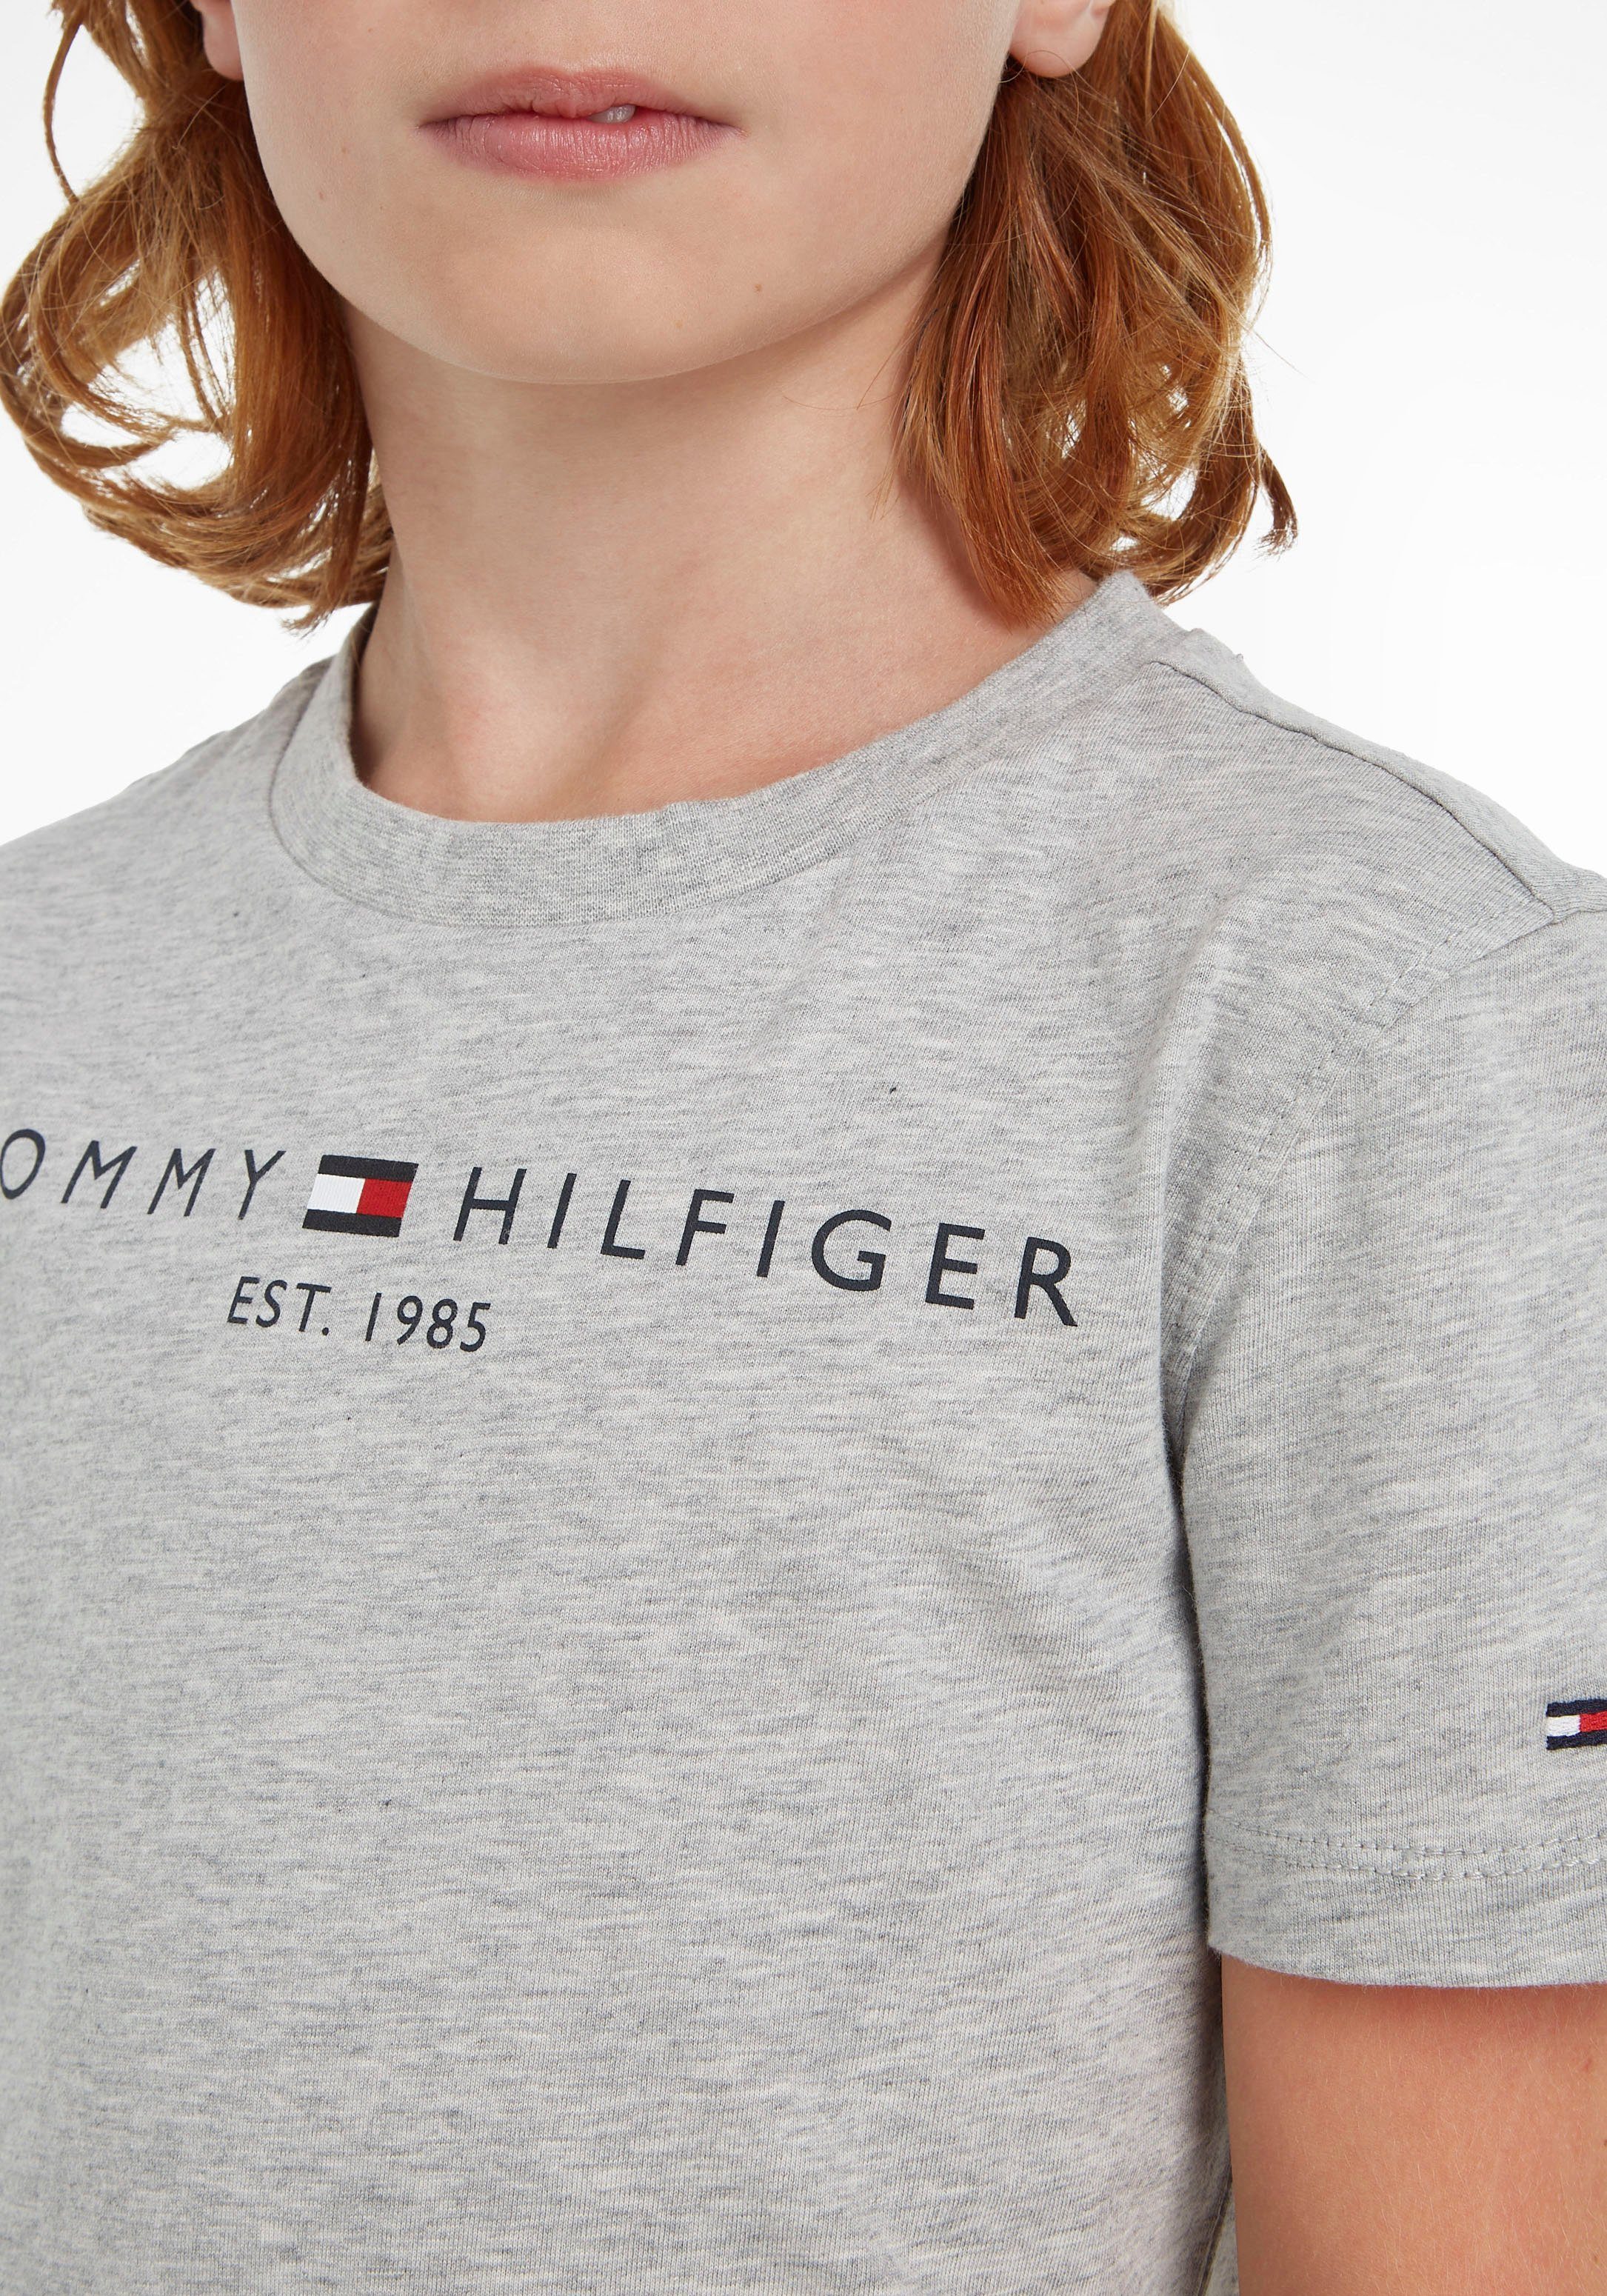 Jungen Kinder und Tommy TEE Junior Kids ESSENTIAL Hilfiger MiniMe,für Mädchen T-Shirt